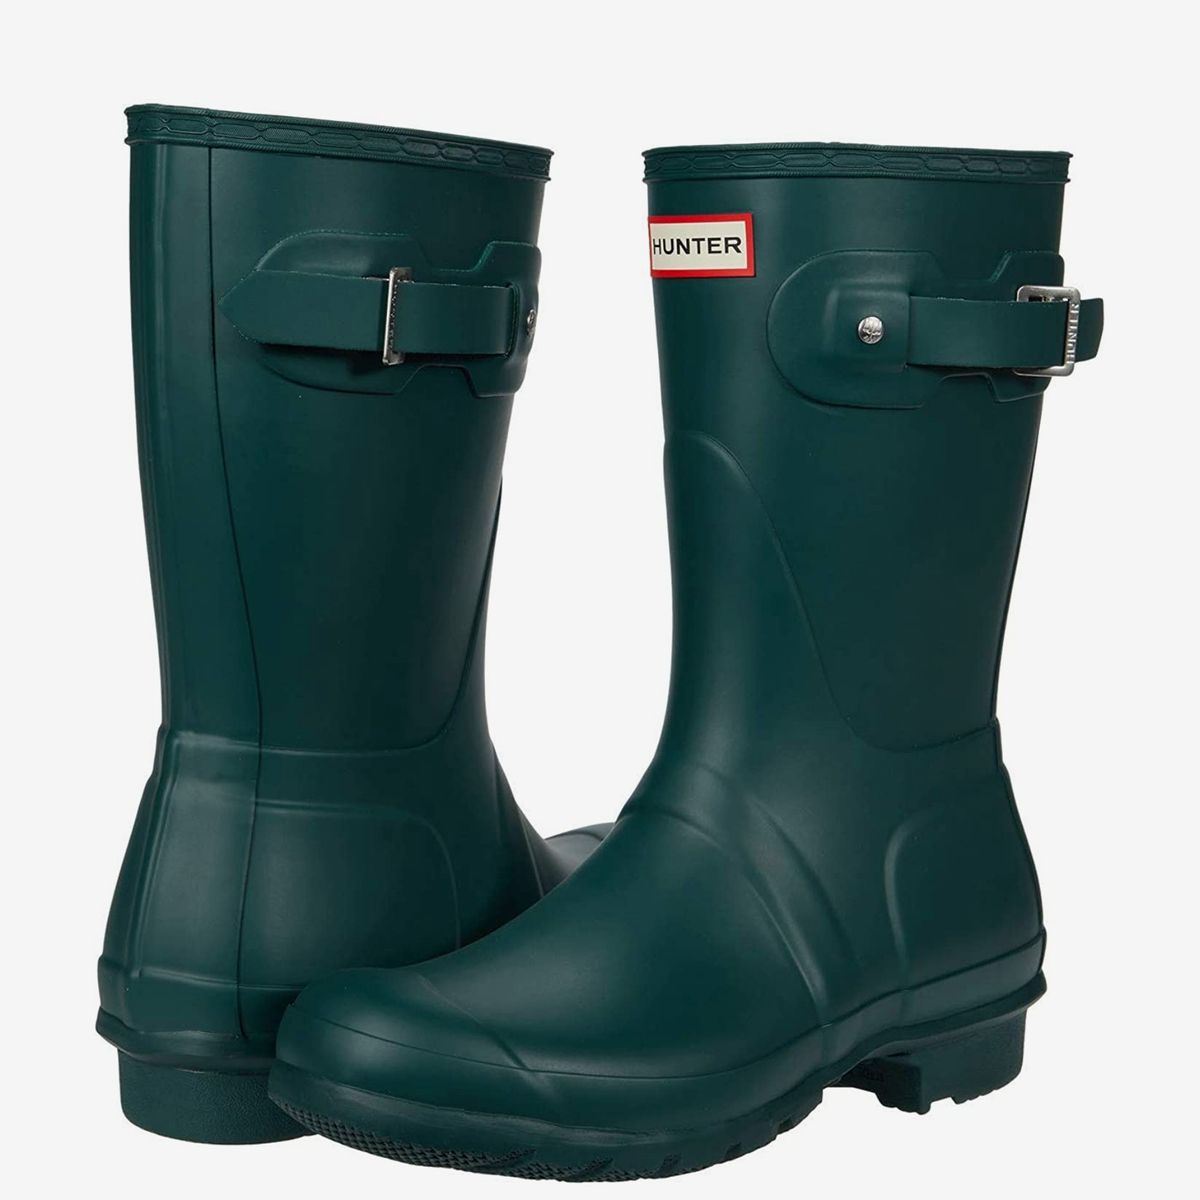 comfy rain boots